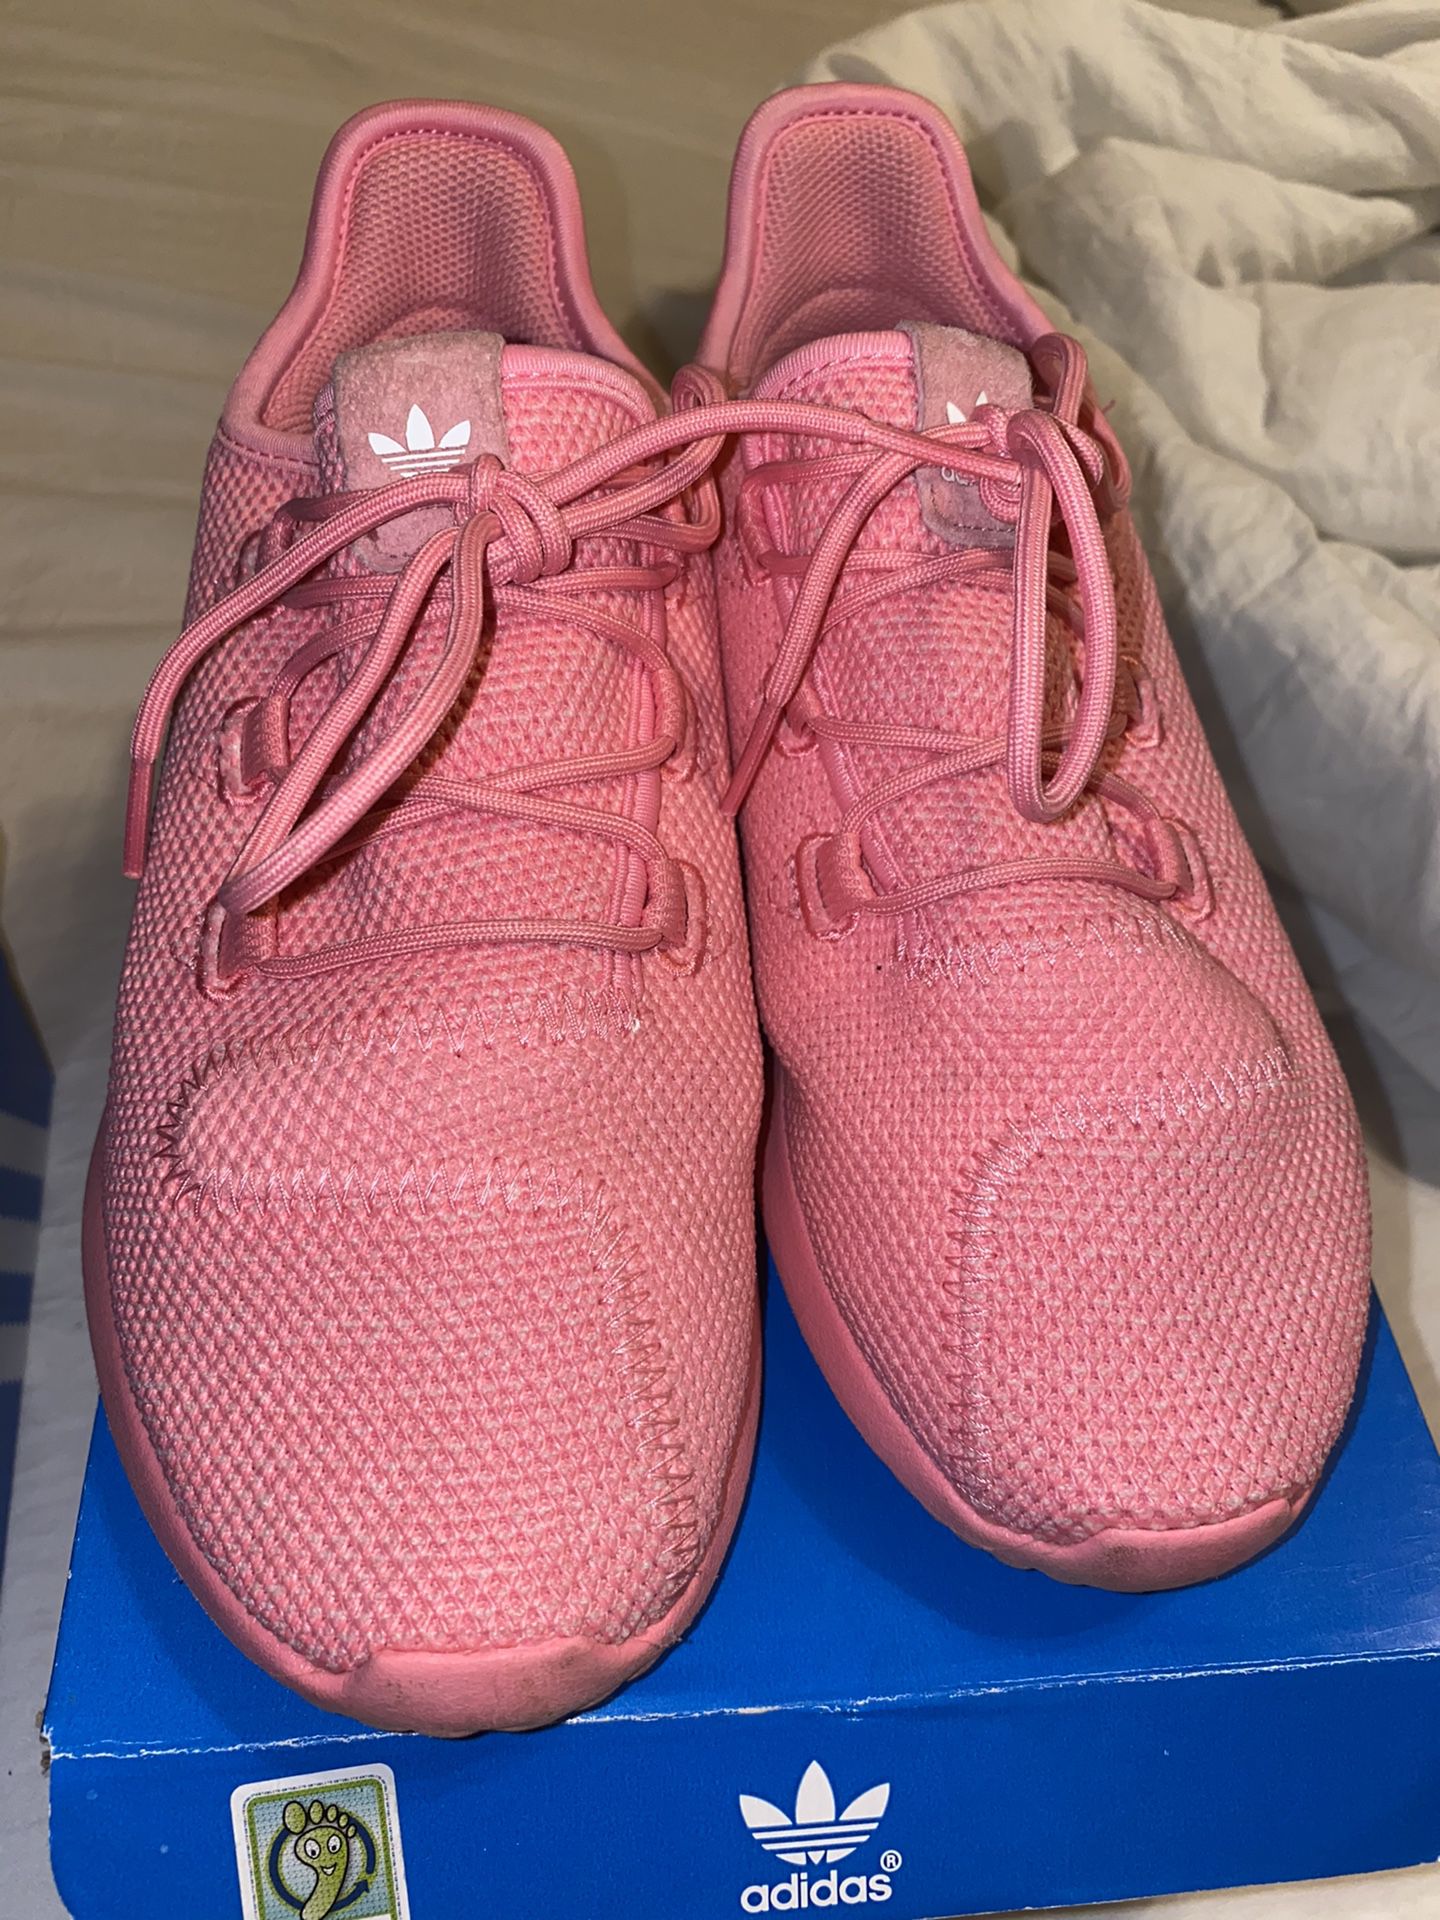 Adidas pink tubulars size 3 in girls